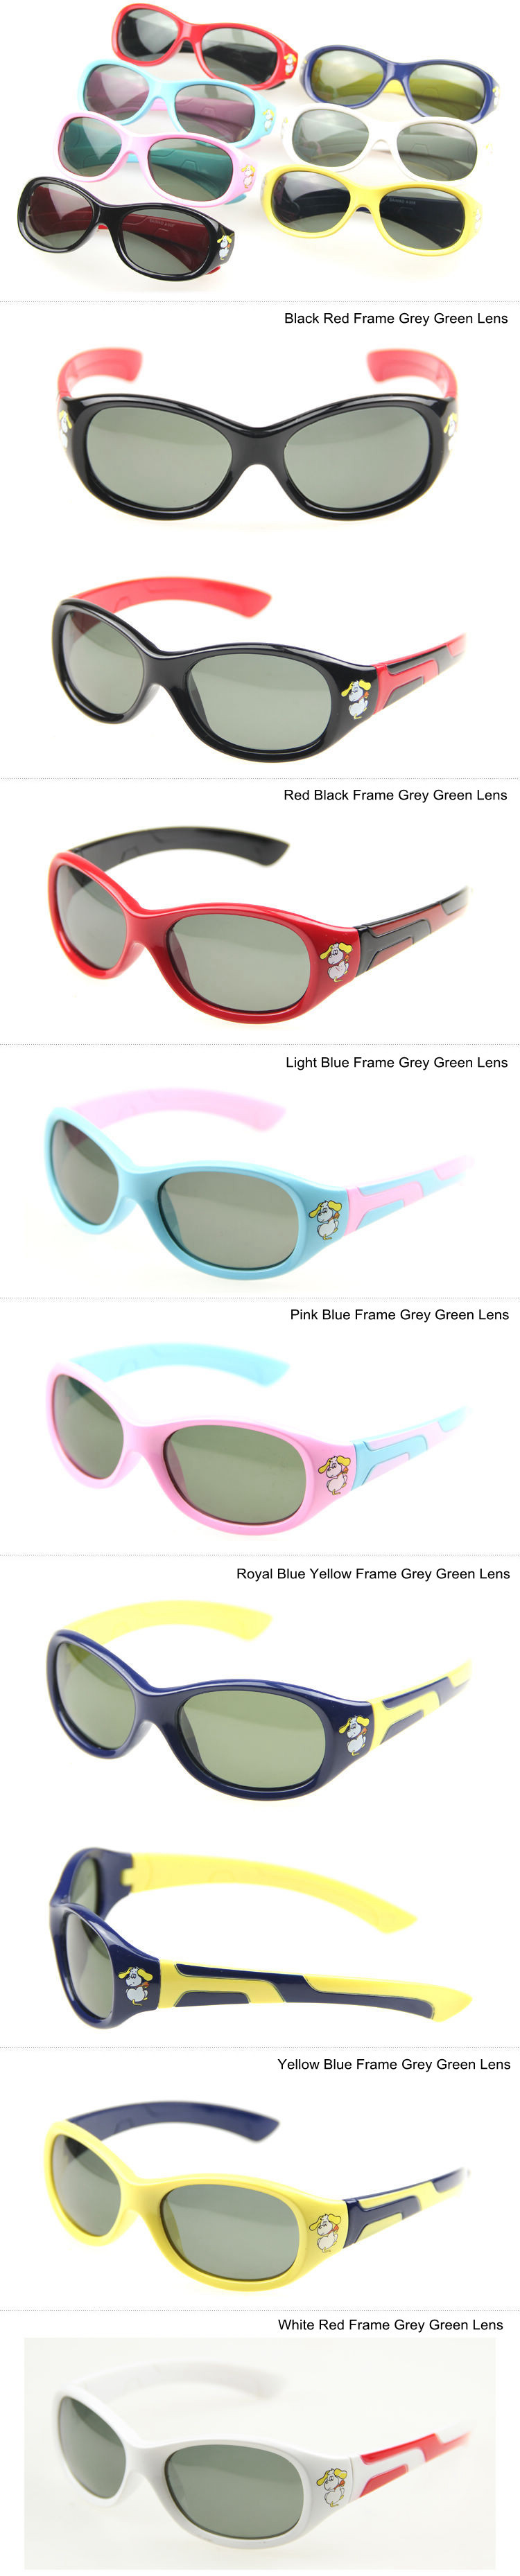 Boys Girls Kids Polarized Sunglasses Oval PC Frame Polarised Grey Green Lens UV400 Glasses For Children Toddler Age (3 - 12yr)_7 (3)